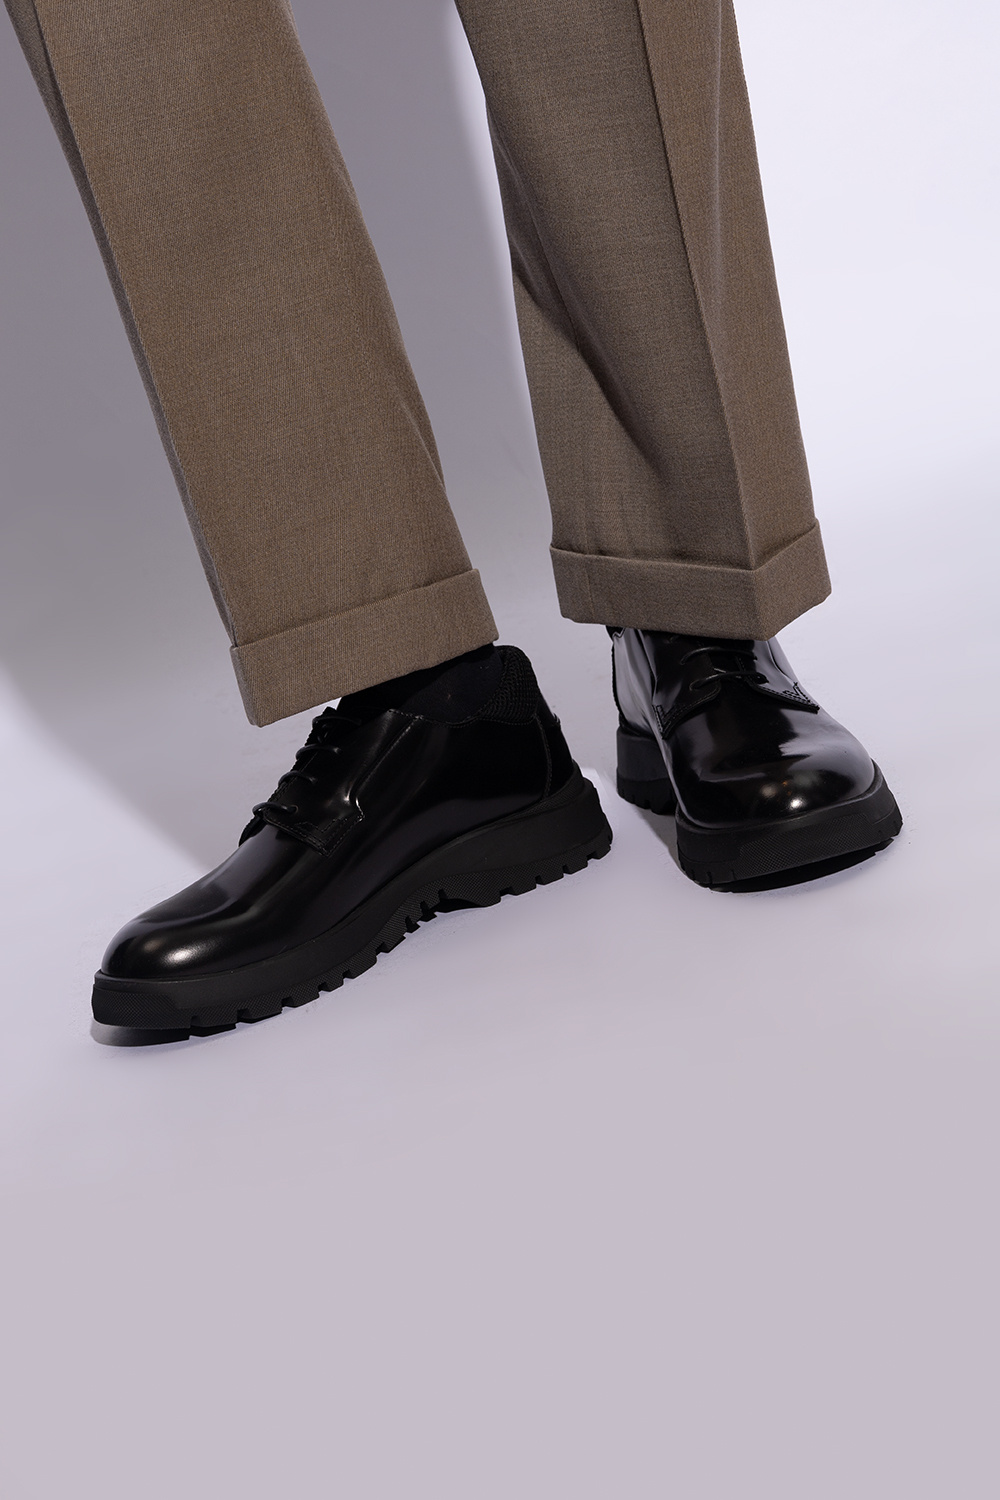 Versace zapatillas de running Under Armour voladoras pie arco bajo